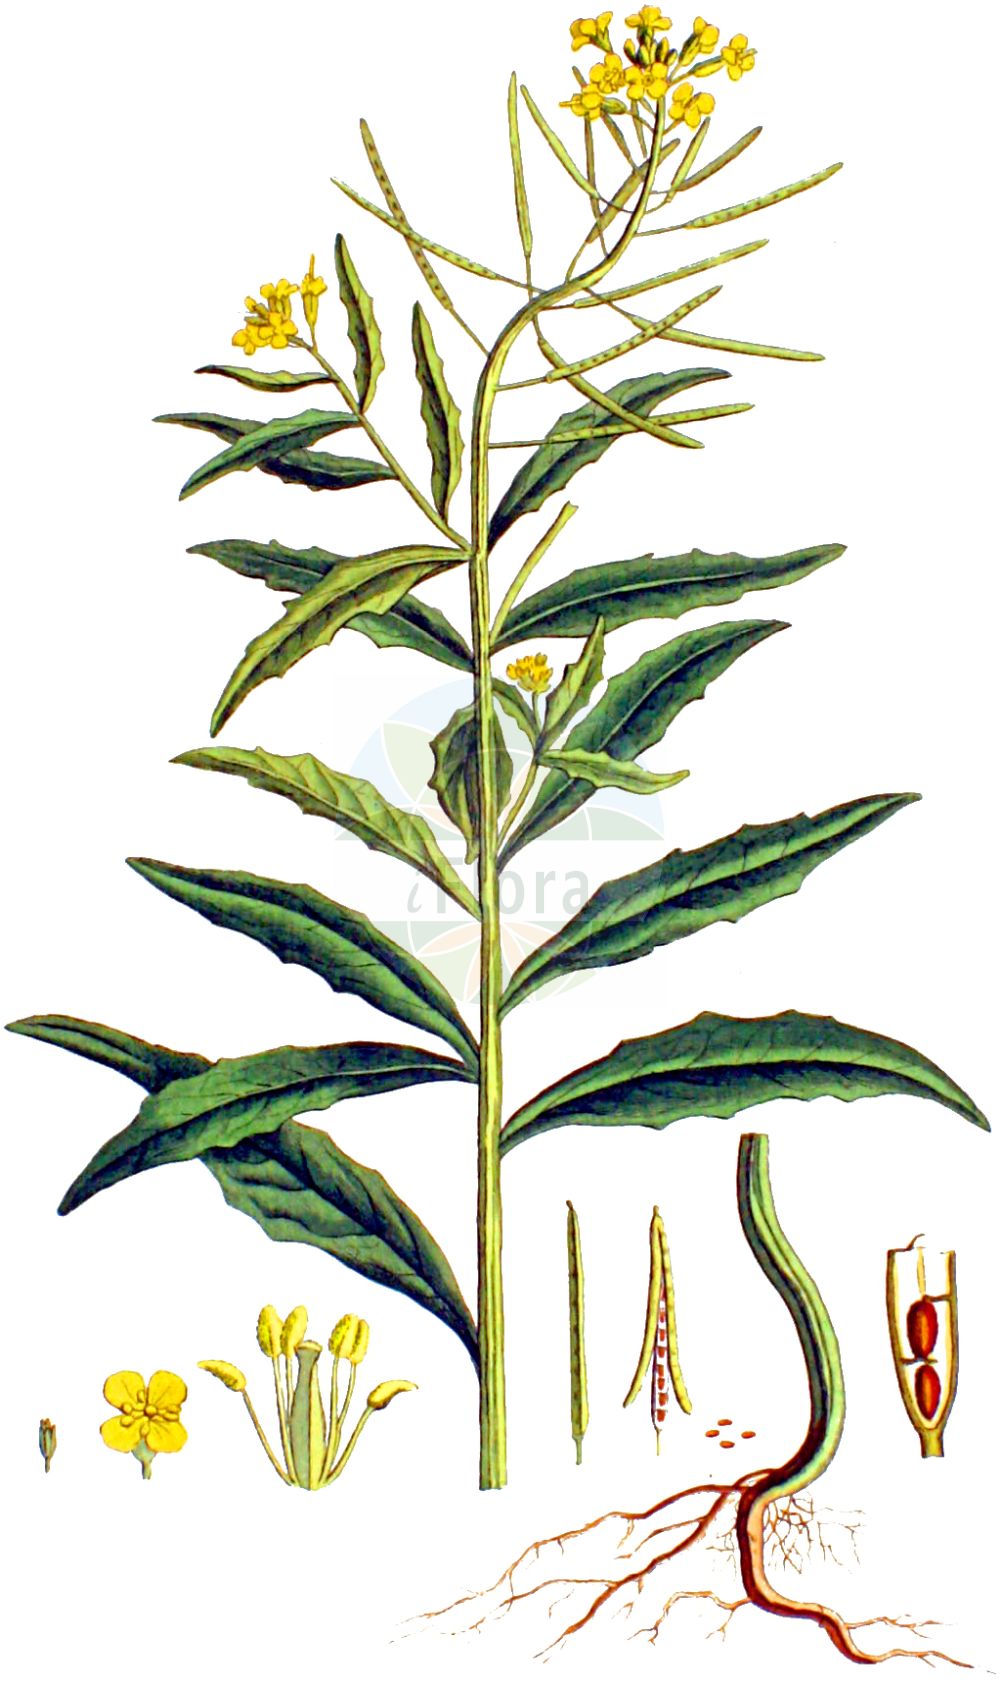 Historische Abbildung von Erysimum cheiranthoides (Acker-Schöterich - Treacle-mustard). Das Bild zeigt Blatt, Bluete, Frucht und Same. ---- Historical Drawing of Erysimum cheiranthoides (Acker-Schöterich - Treacle-mustard). The image is showing leaf, flower, fruit and seed.(Erysimum cheiranthoides,Acker-Schöterich,Treacle-mustard,Erysimum cheiranthoides,Acker-Schoeterich,Acker-Schotendotter,Treacle-mustard,Wormseed Wallflower,Wallflower Mustard,Wormseed Mustard,Erysimum,Schöterich,Wallflower,Brassicaceae,Kreuzblütler,Cabbage family,Blatt,Bluete,Frucht,Same,leaf,flower,fruit,seed,Kops (1800-1934))